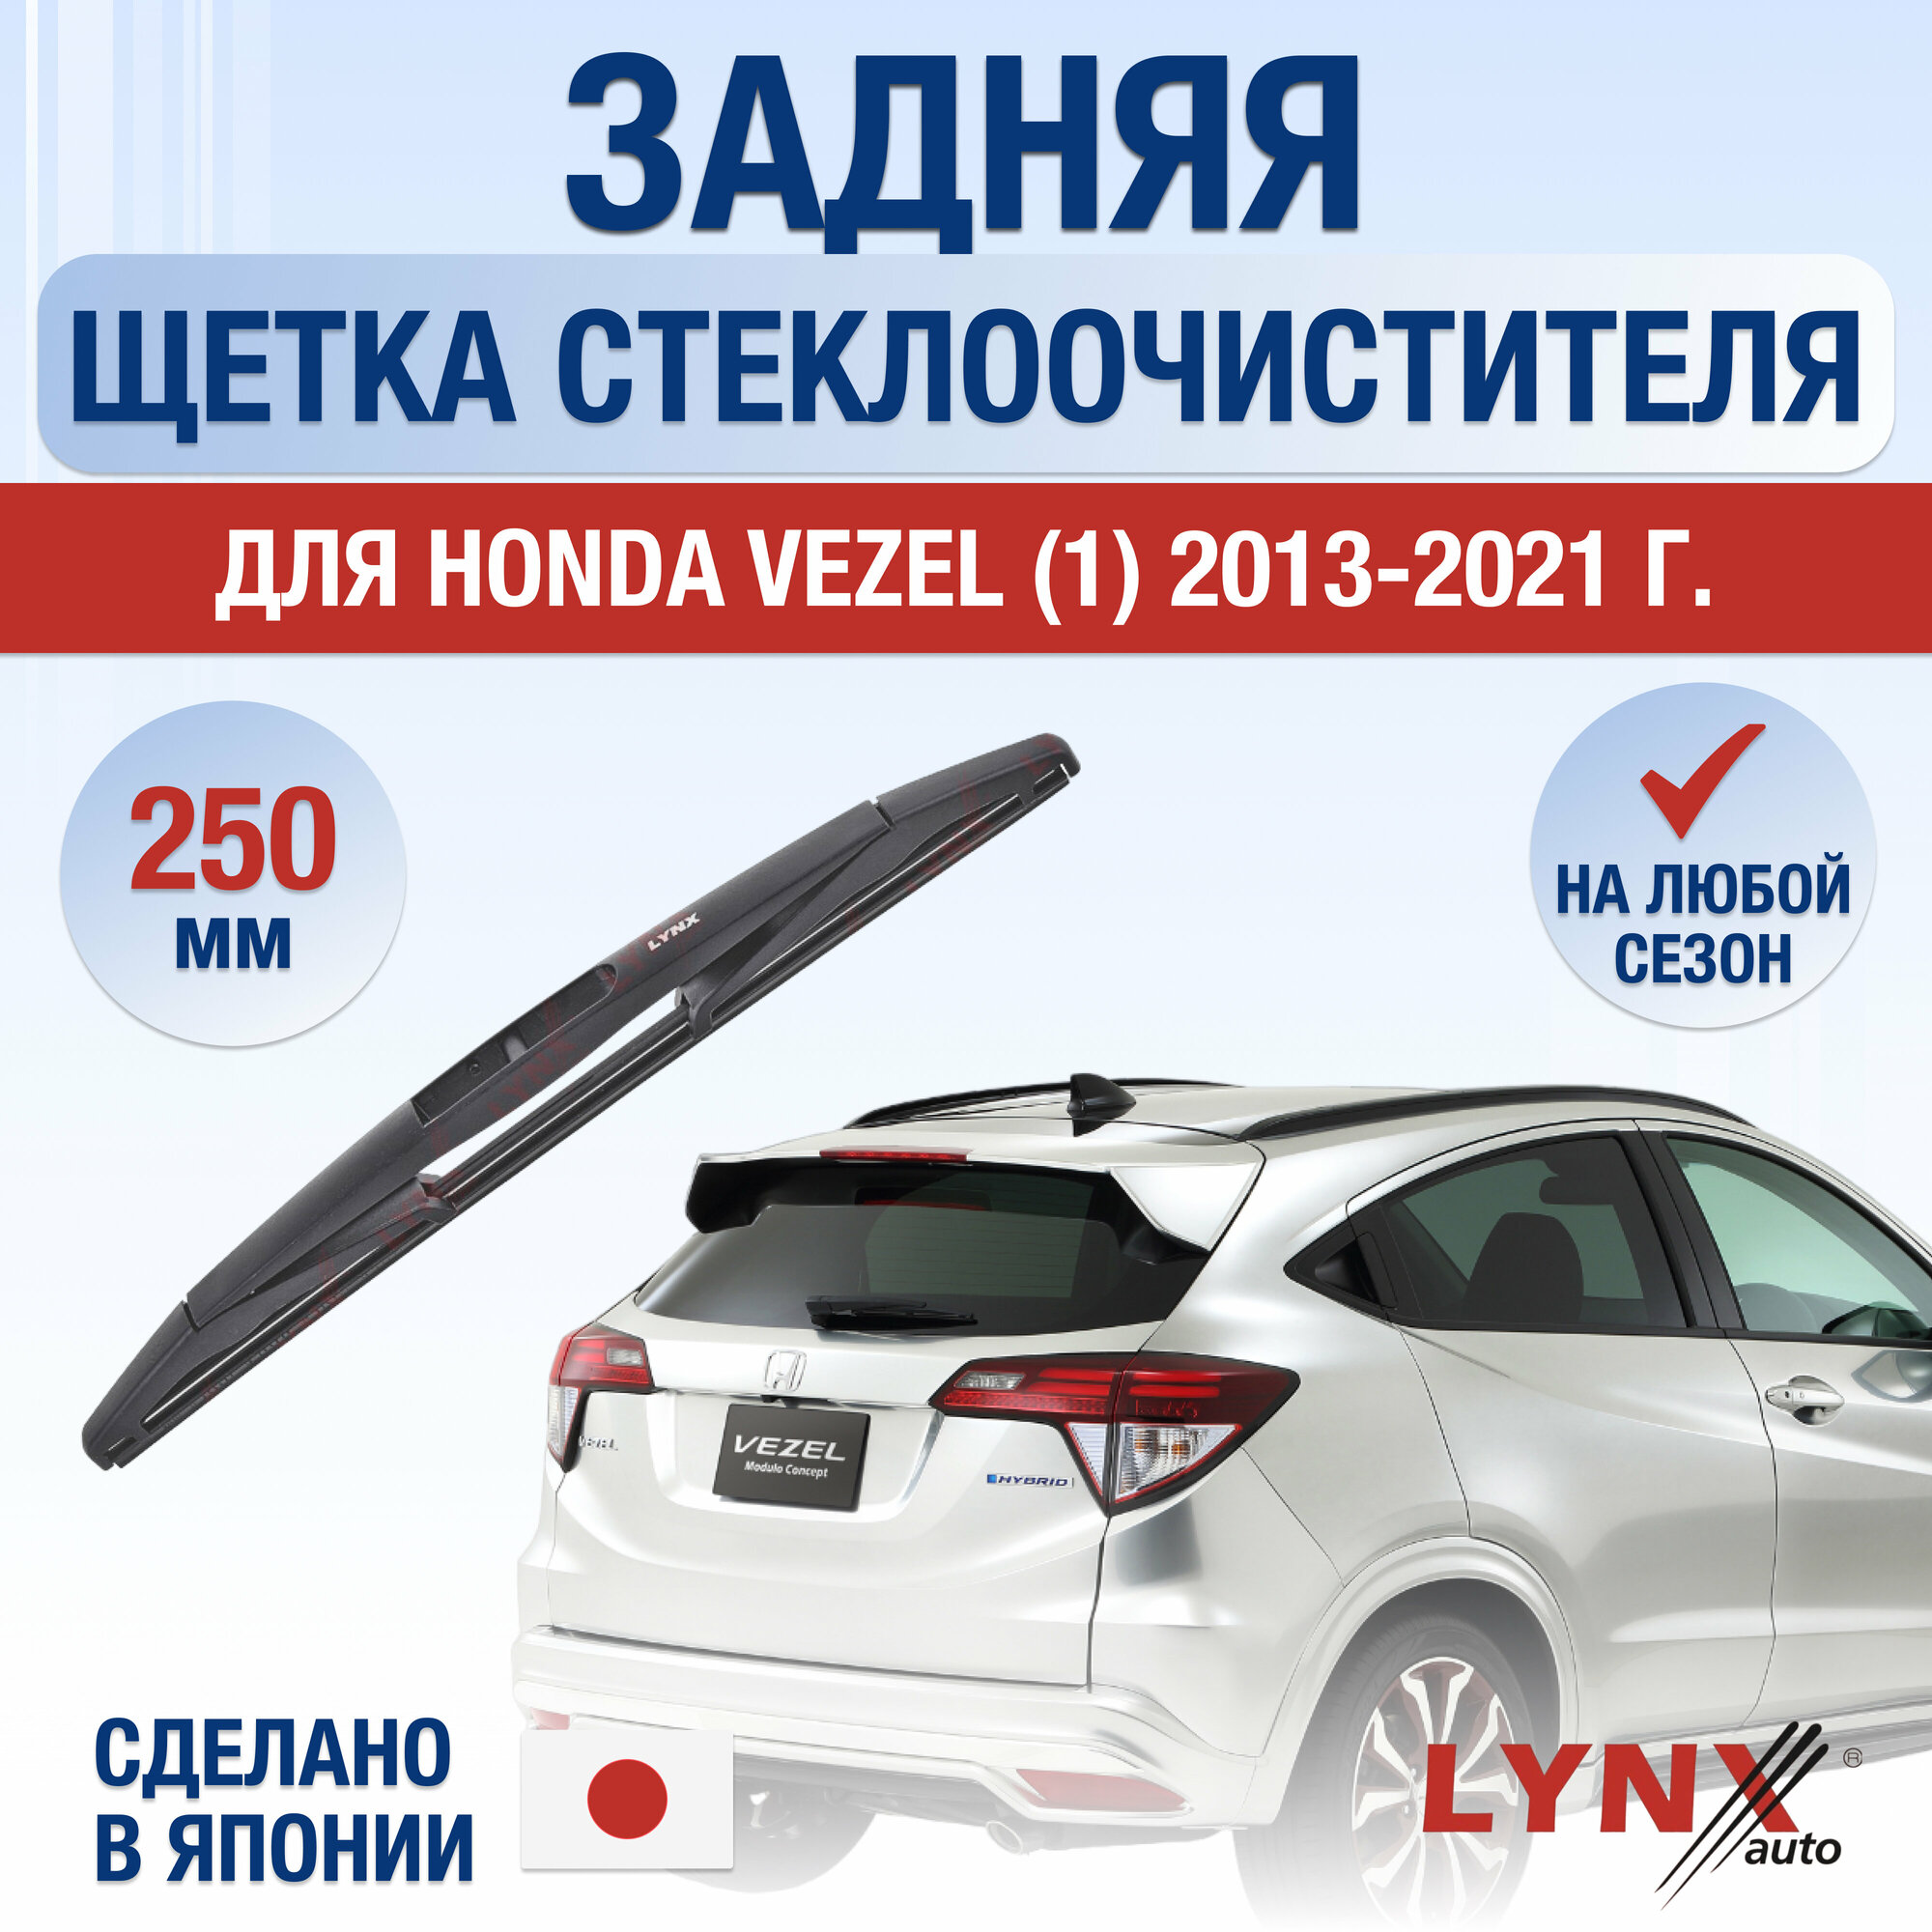 Задняя щетка стеклоочистителя для Honda Vezel (1) / 2013 2014 2015 2016 2017 2018 2019 2020 2021 / Задний дворник 250 мм Хонда Везел